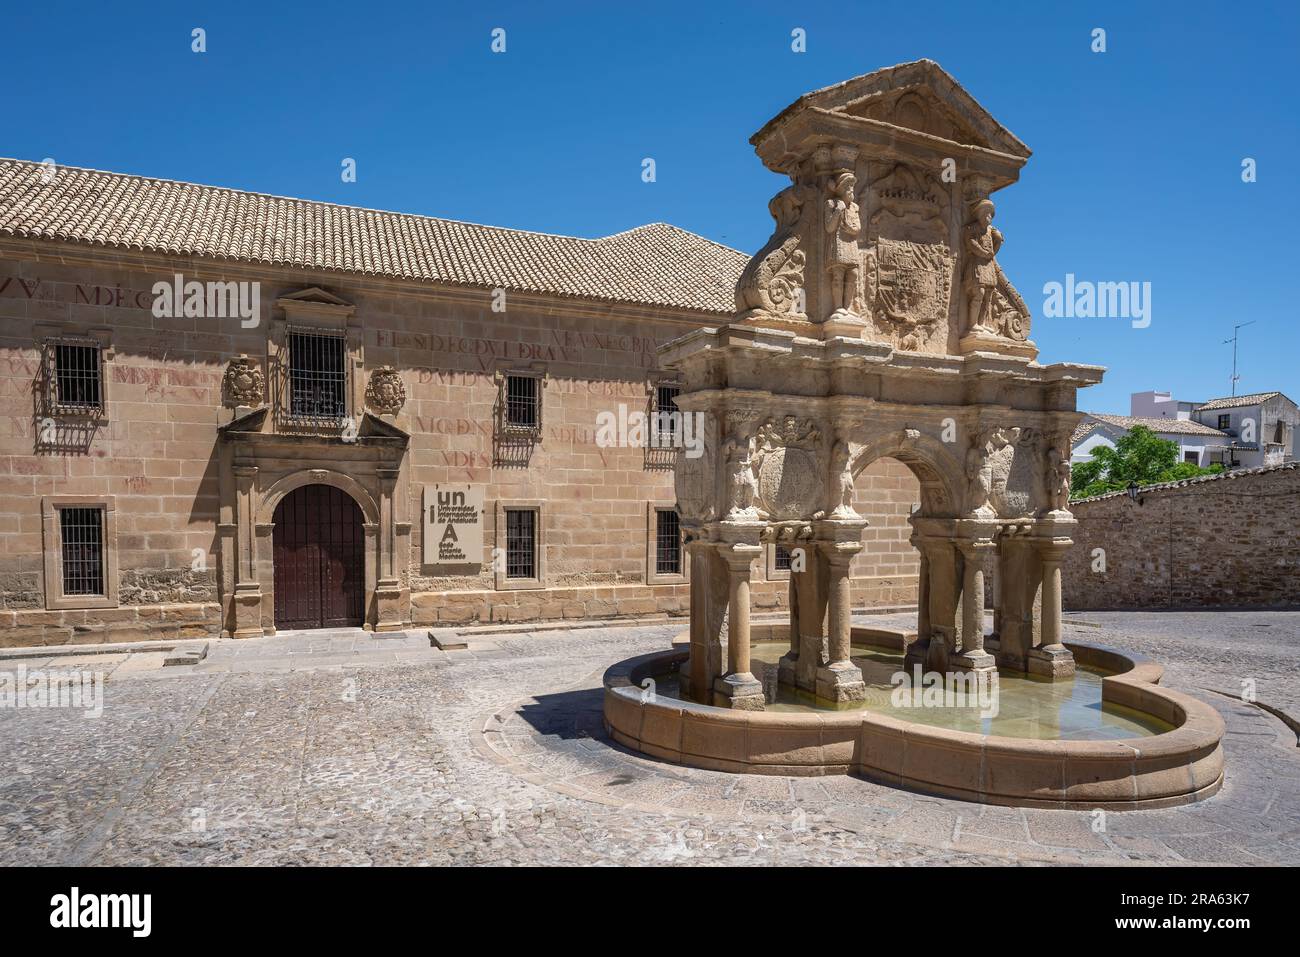 Fontana di Santa Maria e Seminario conciliare di San Felipe Neri in Plaza de Santa Maria - Baeza, Jaen, Spagna Foto Stock